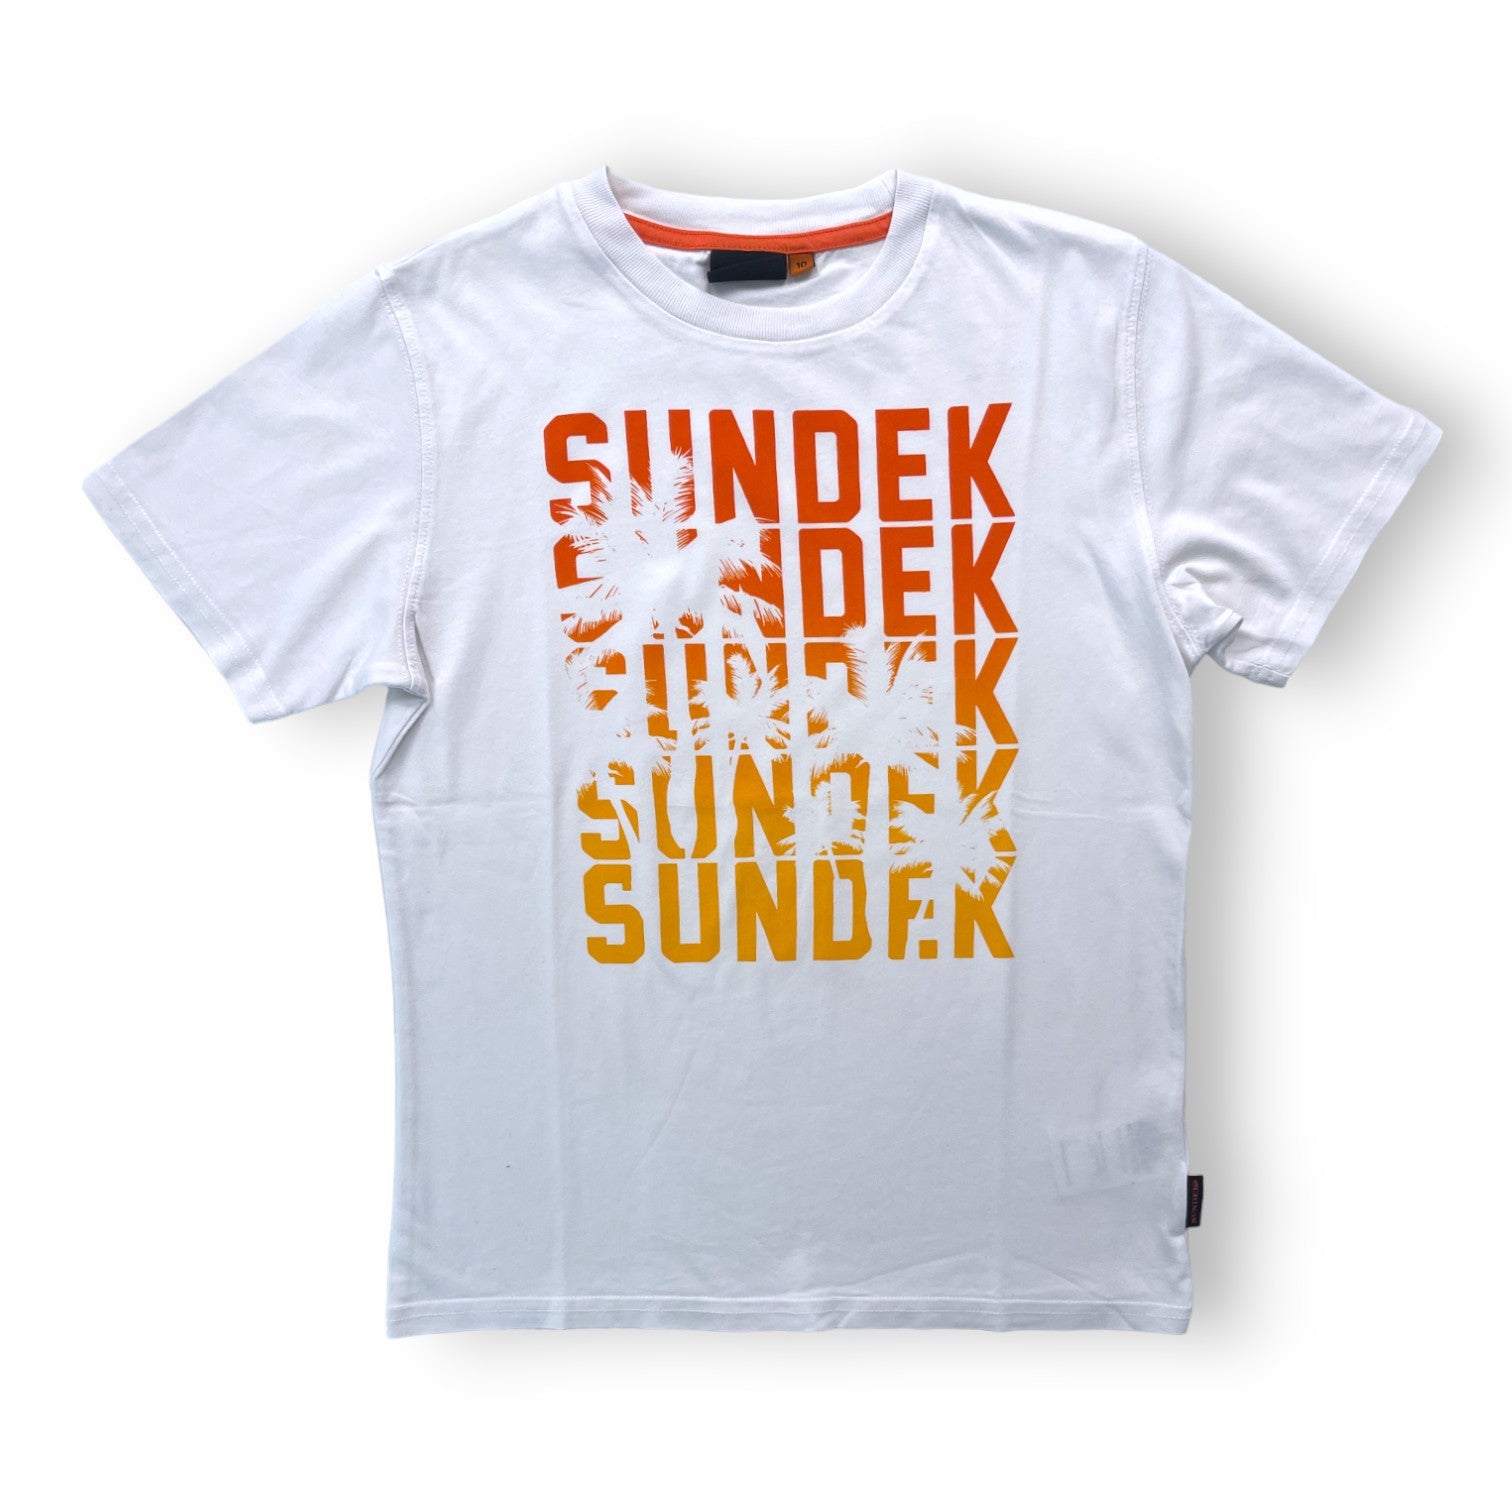 SUNDEK - T shirt blanc logo orange - 10 ans